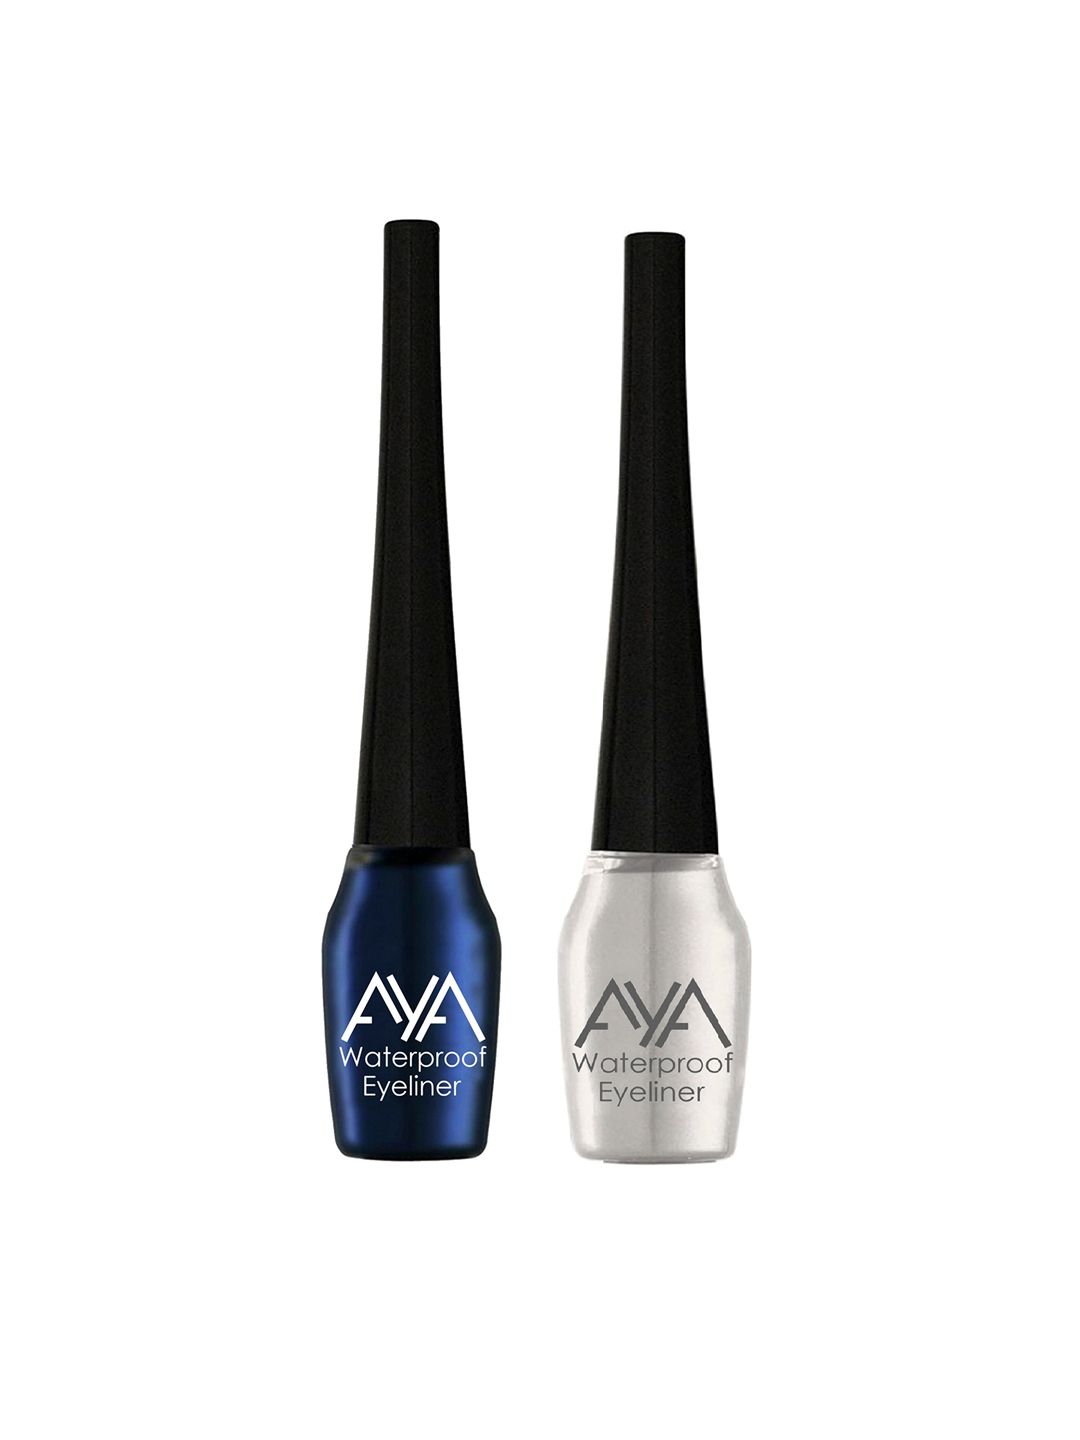 AYA Set of 2 Blue and Silver Waterproof Eyeliner 5ml Each Price in India